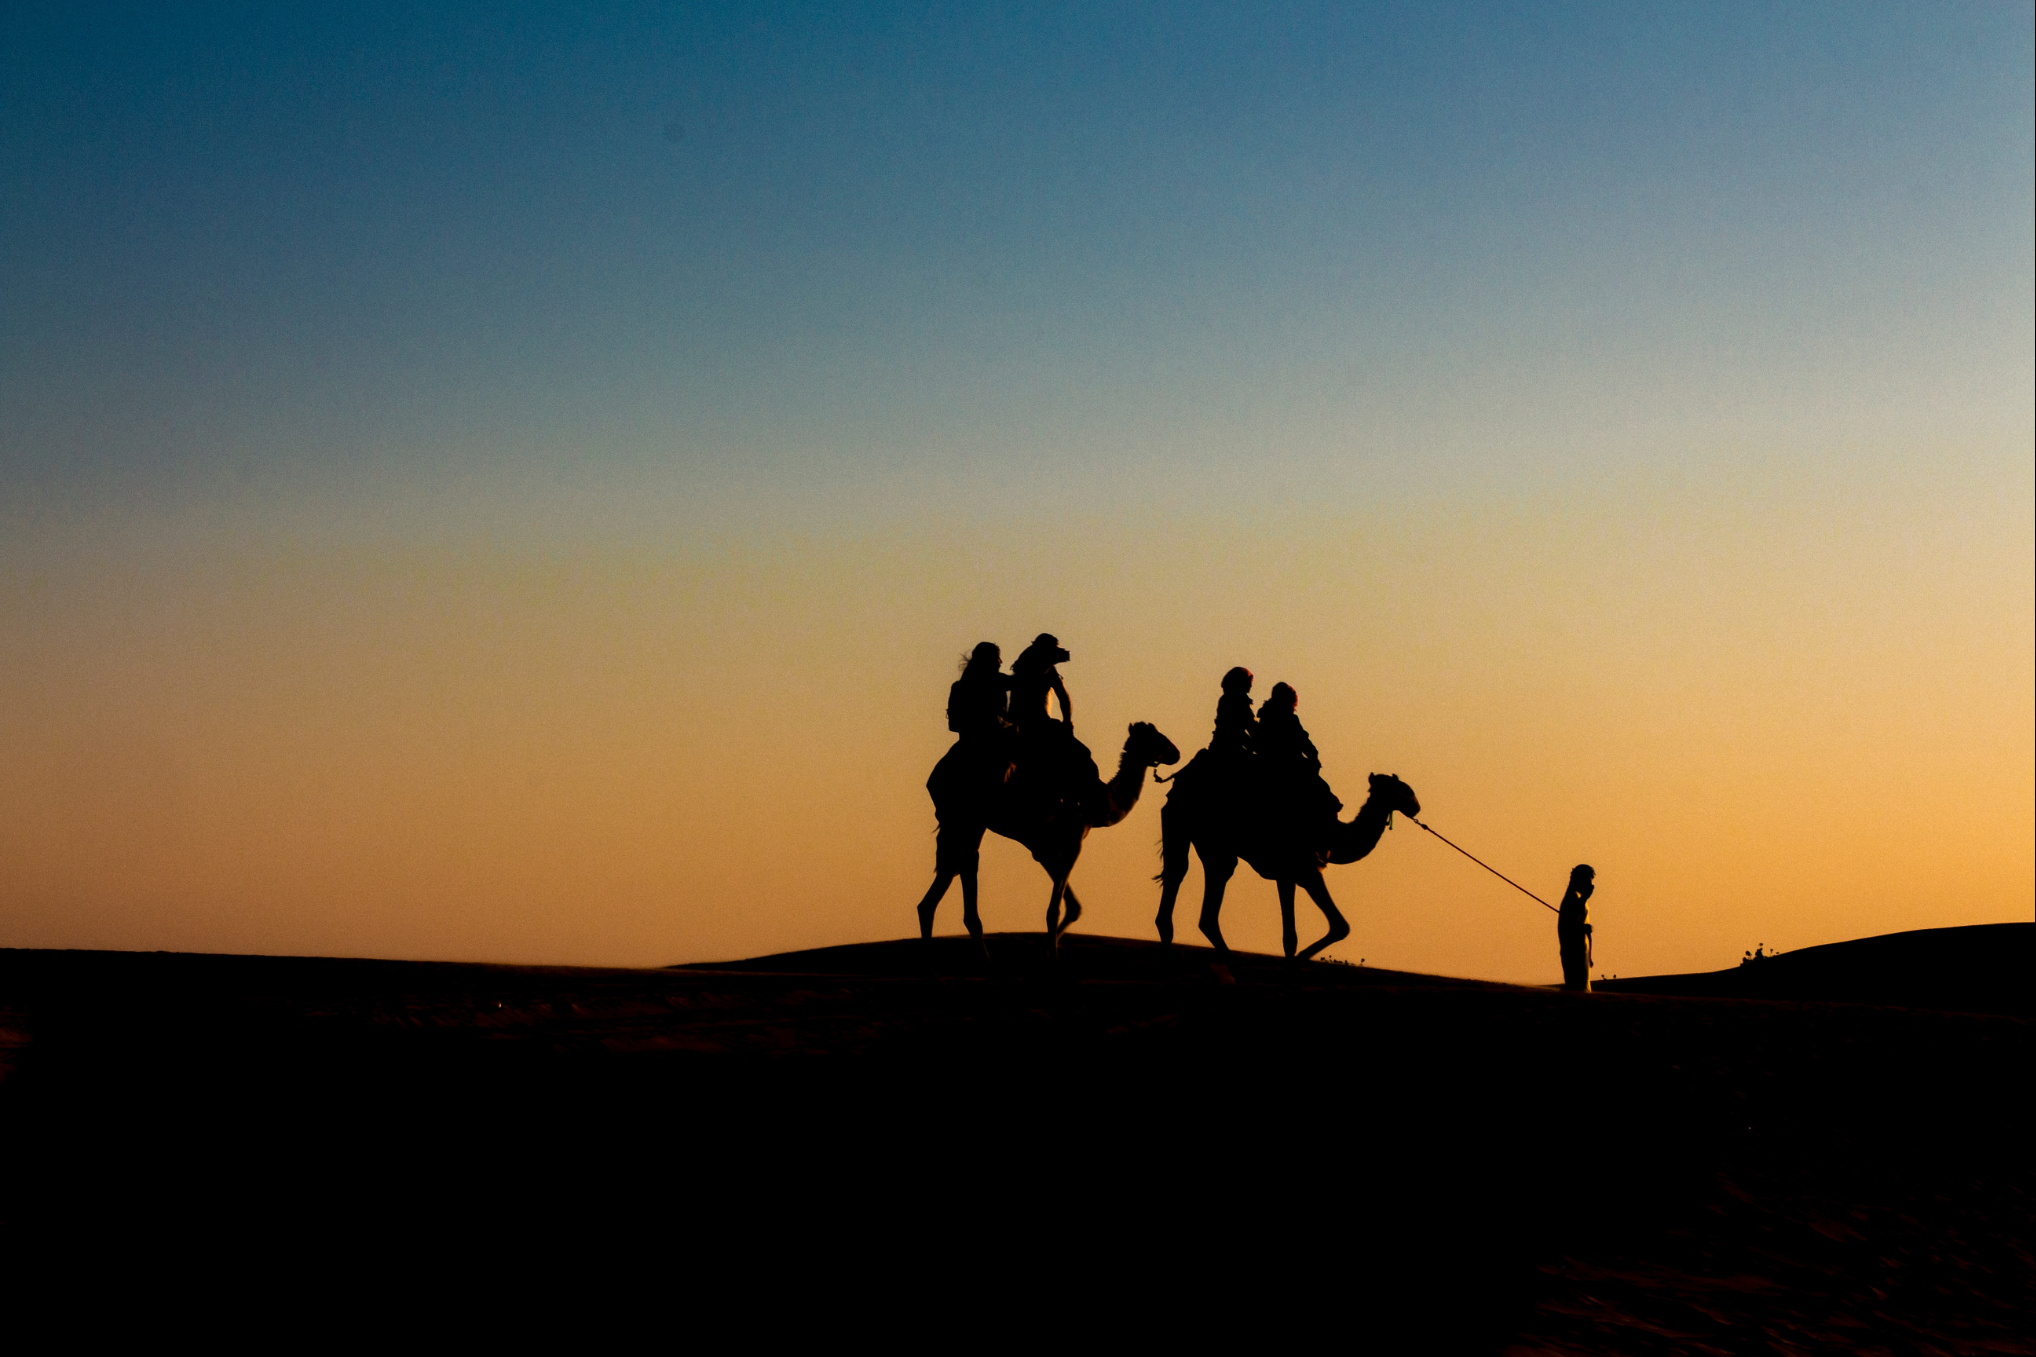 Silhueta de dois camelos com duas pessoas em cima de cada camelo e uma pessoa a frente puxando o primeiro camelo